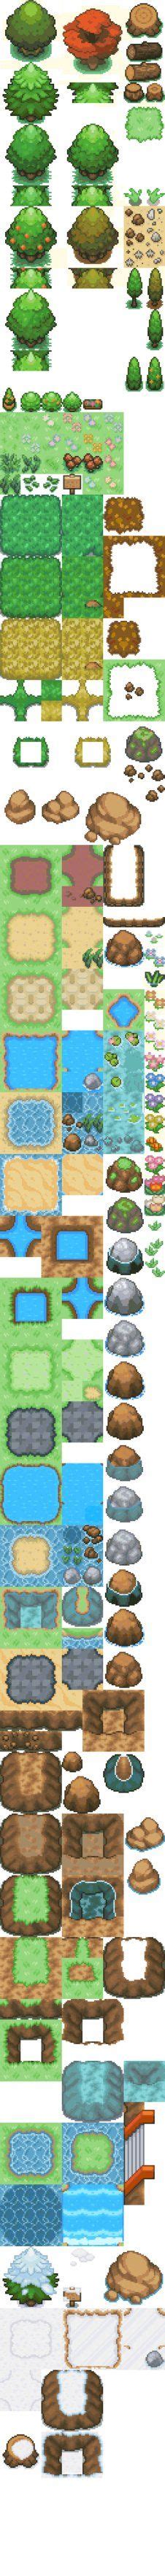 9 Pokemon Tilesets Ideas Pokemon Pixel Art Tutorial Pixel Art